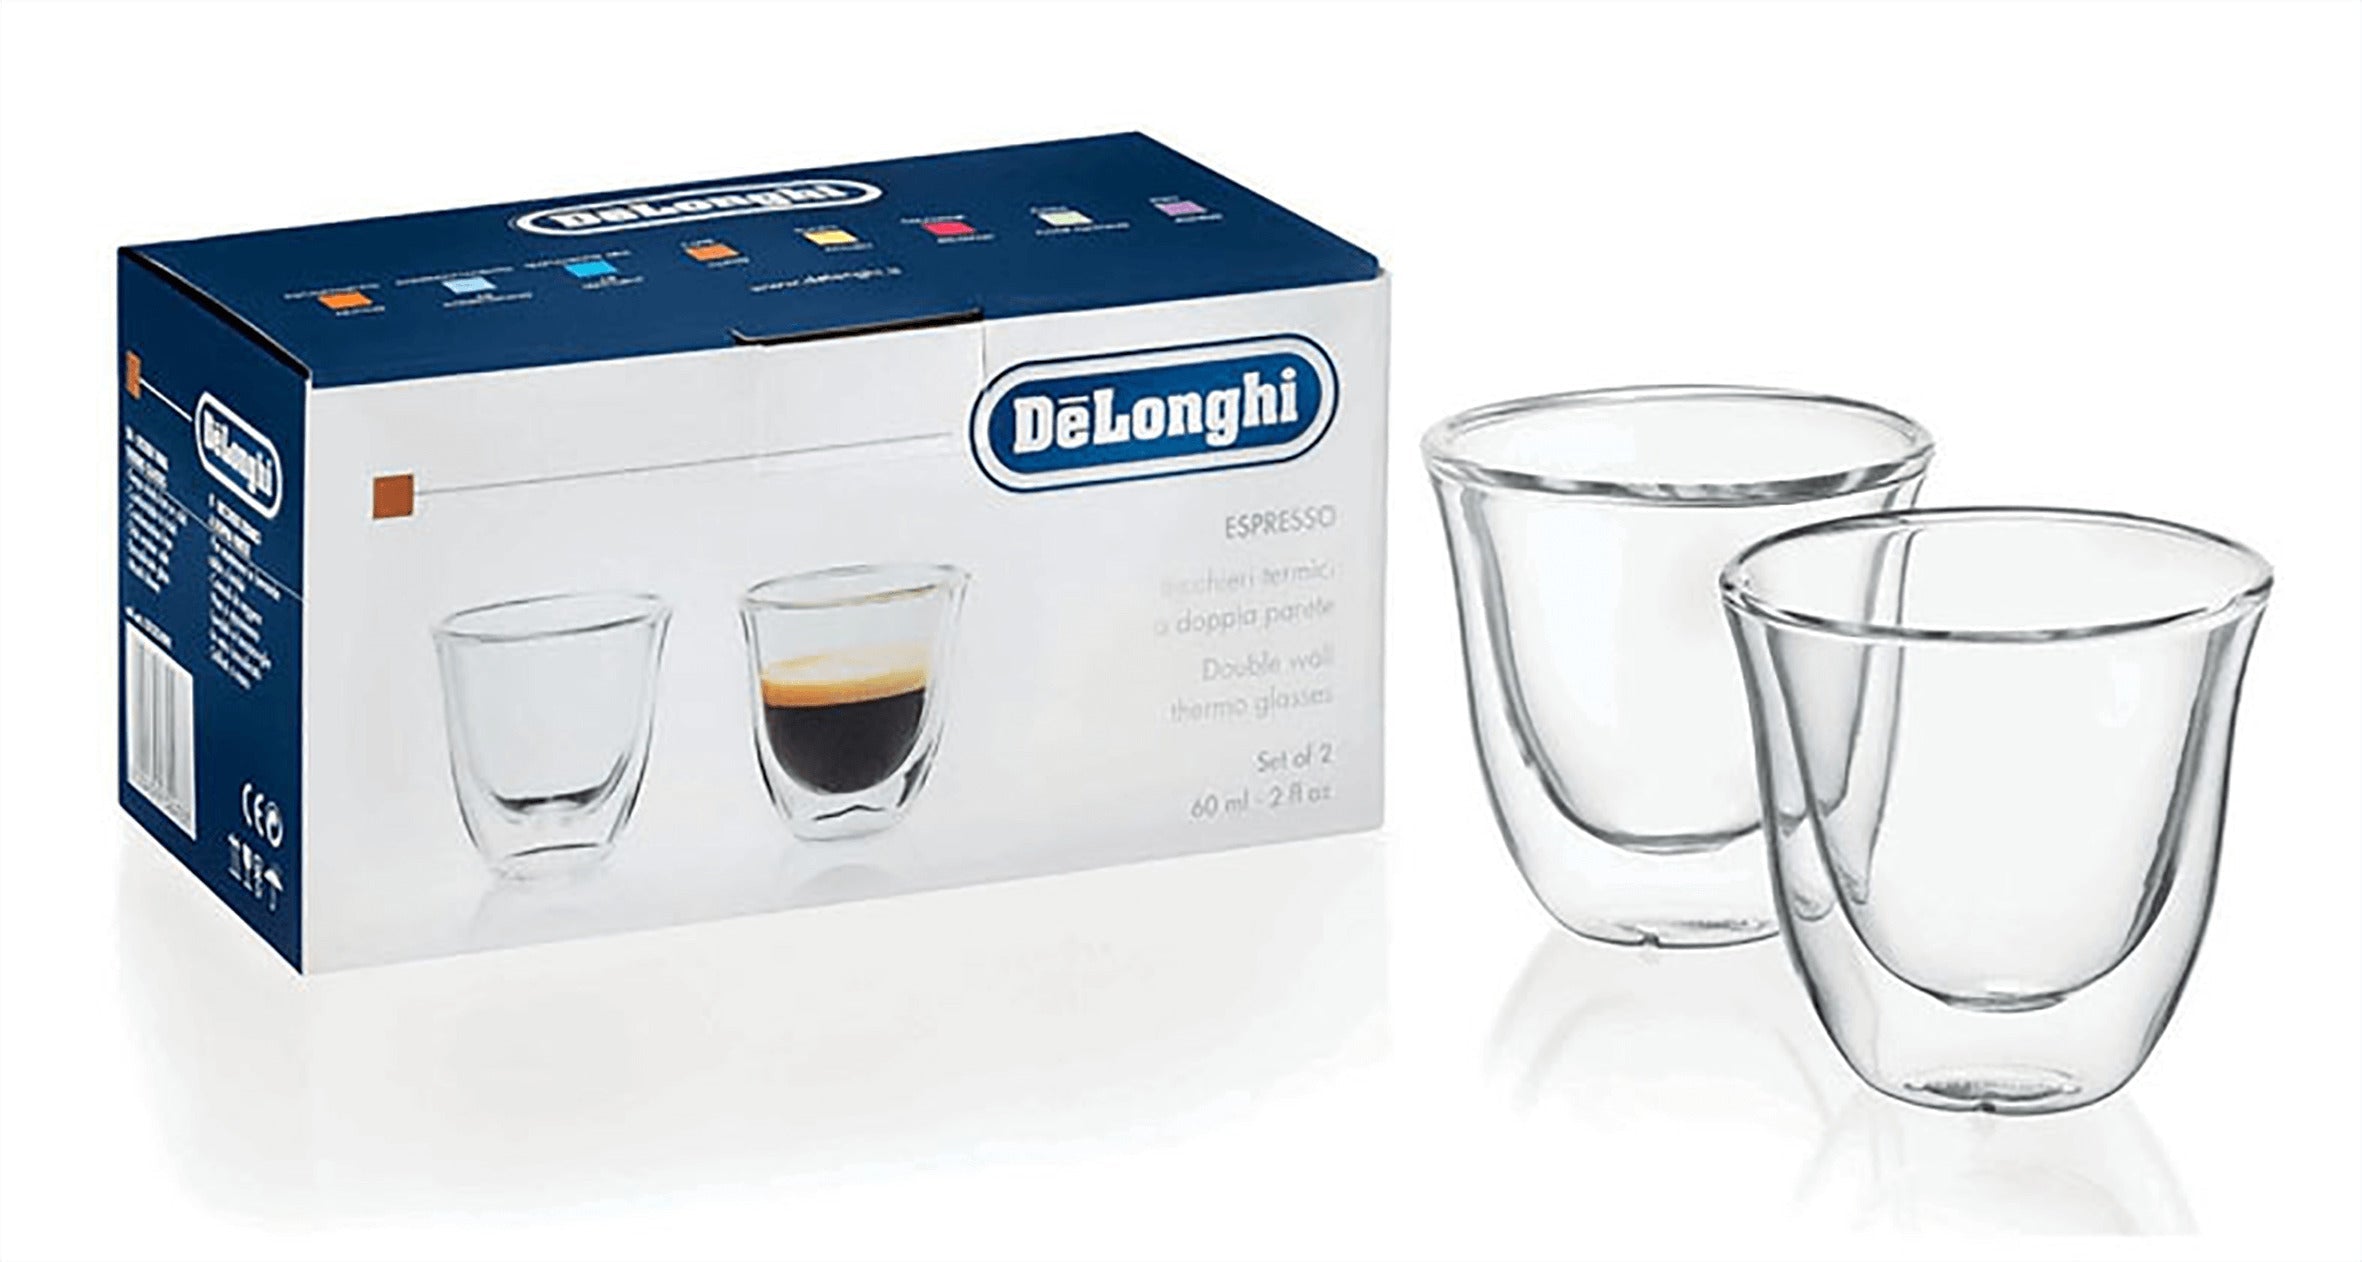 De'Longhi Espresso Glasses Set 5513214591